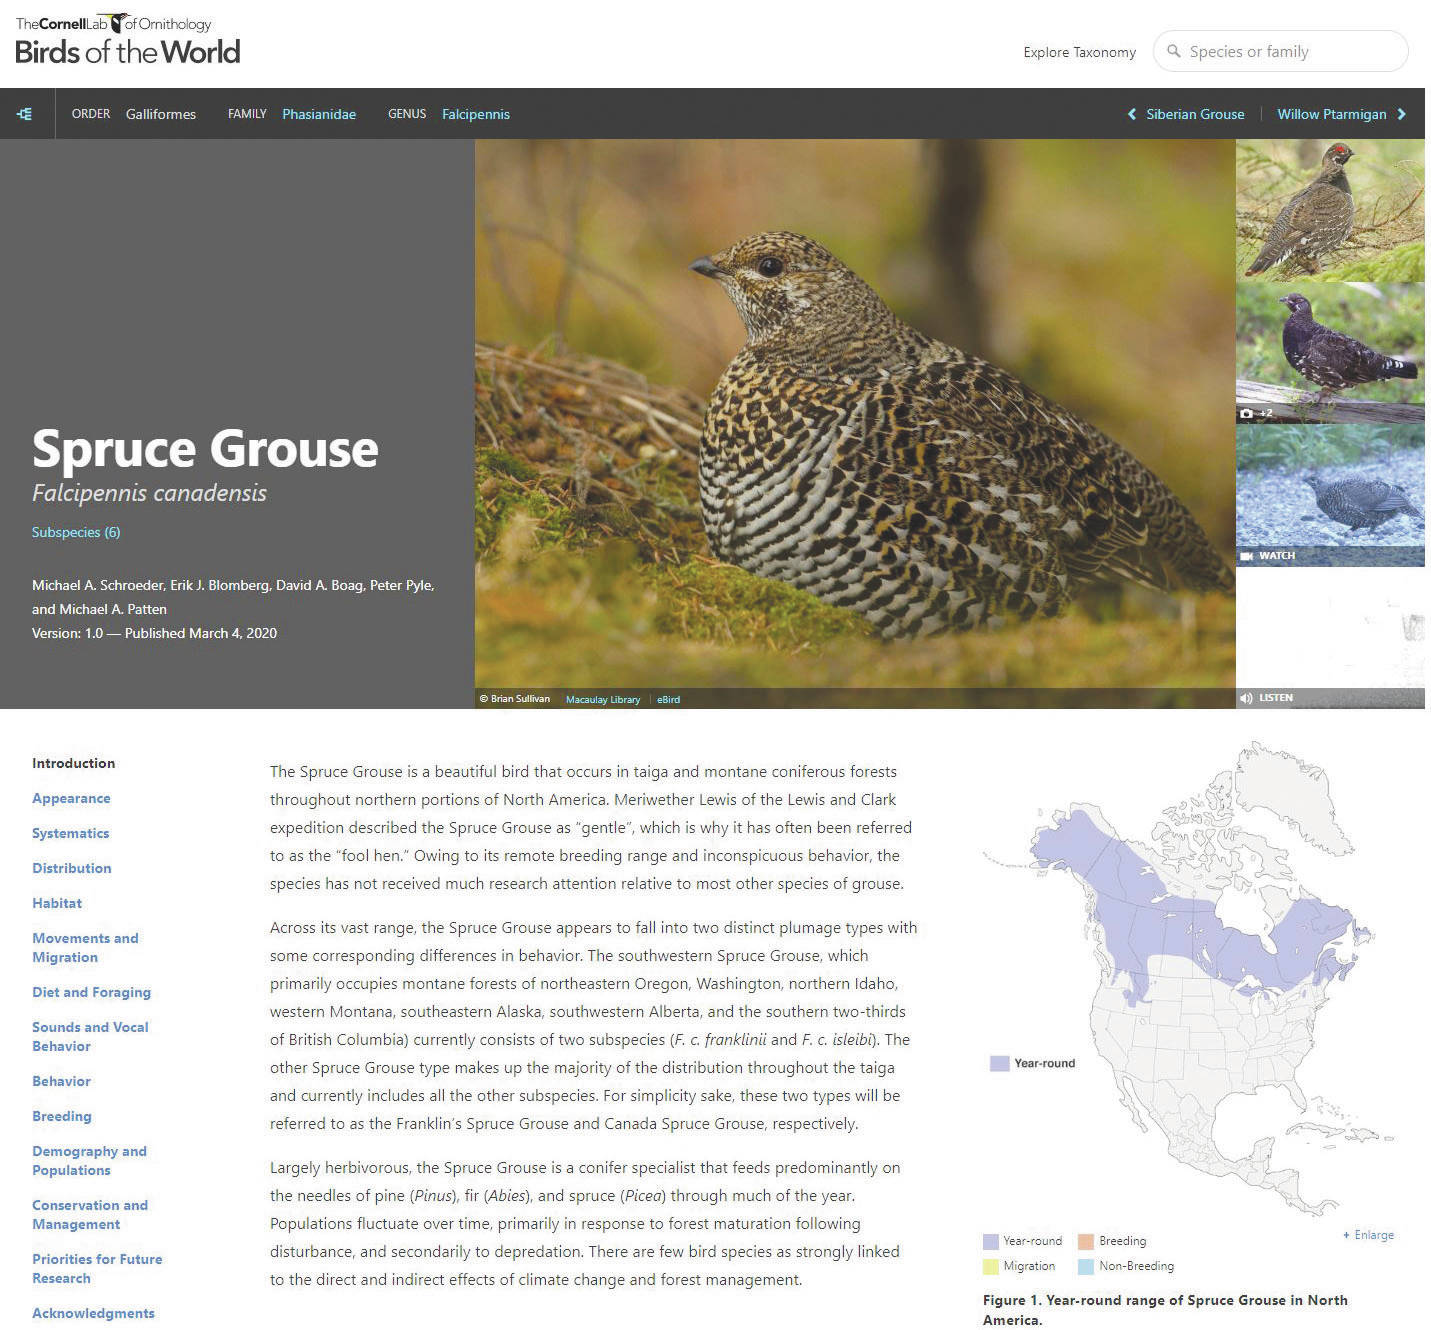 A screenshot of the Birds of the World website.